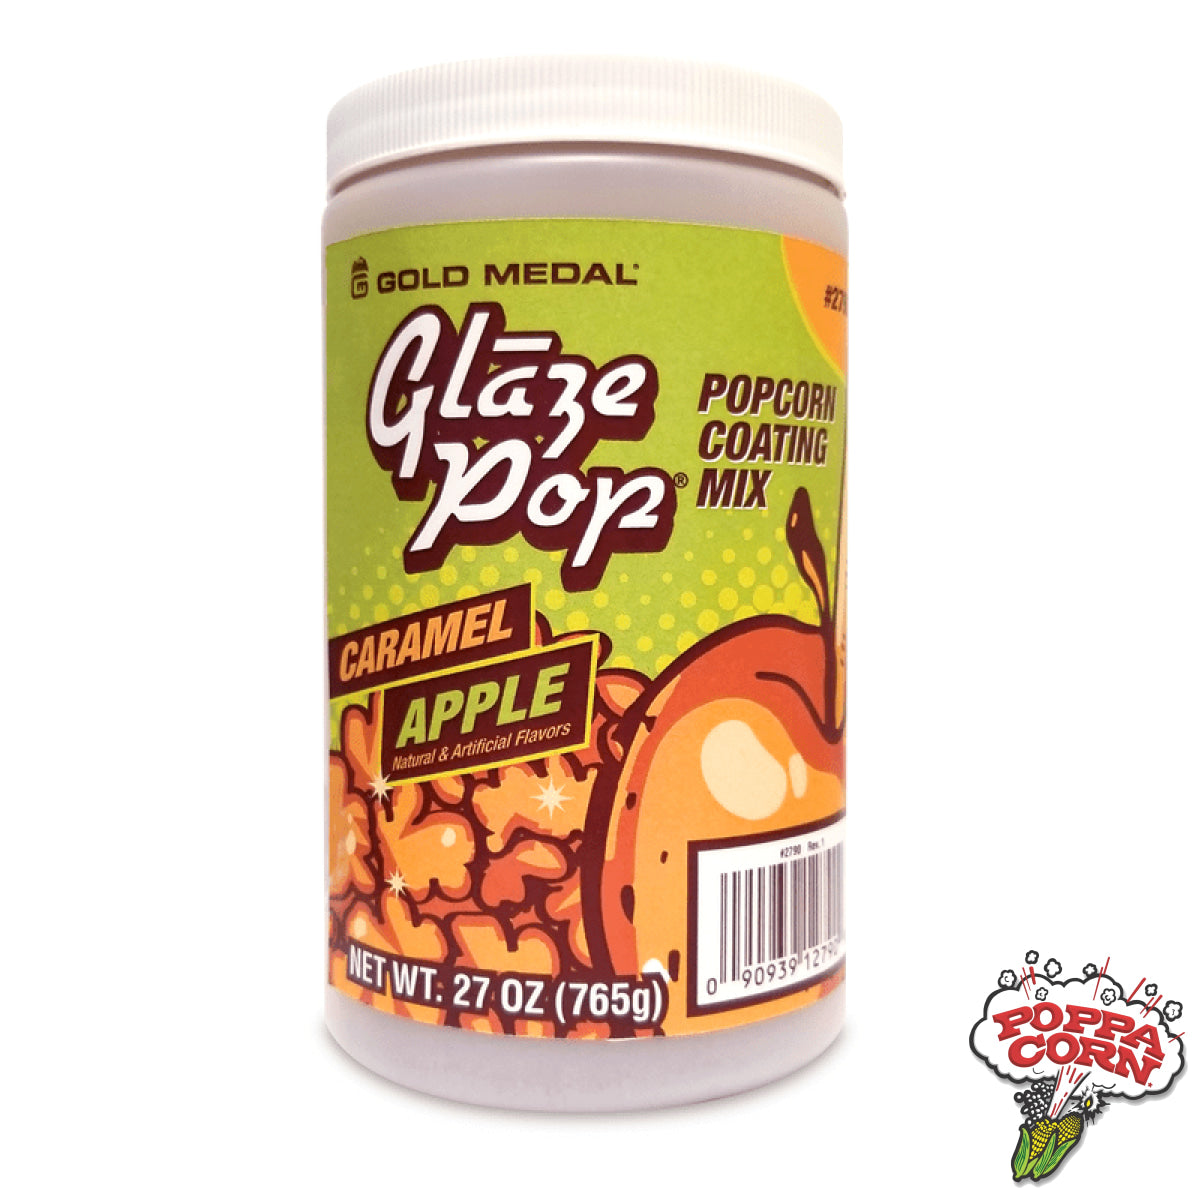 GLA010 - Caramel Apple Glaze Pop® - 765g Jar - Limited Time Offer! - Poppa Corn Corp